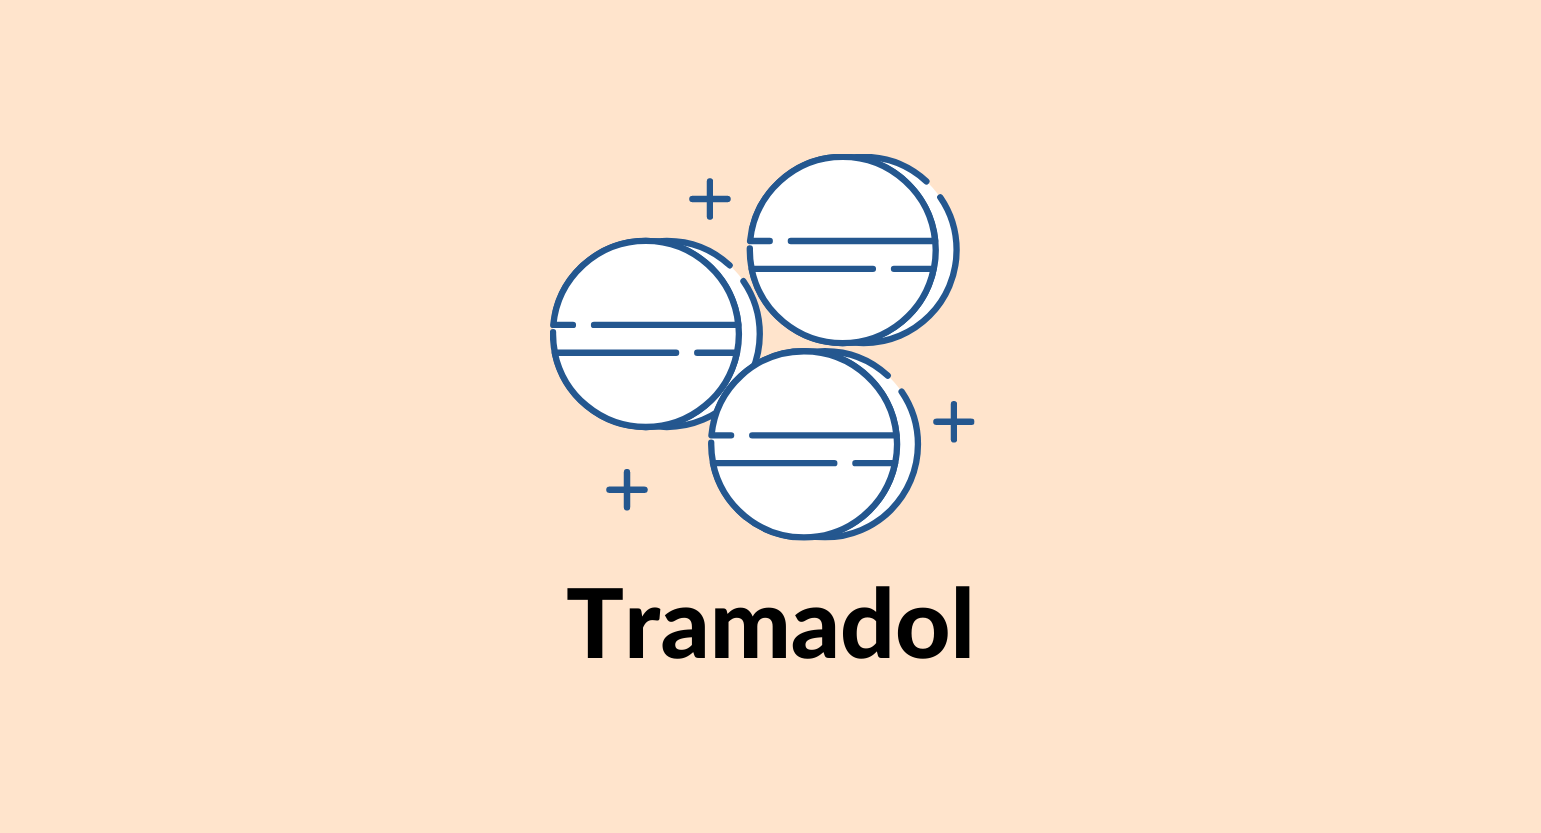 Illustration of tramadol tablets.